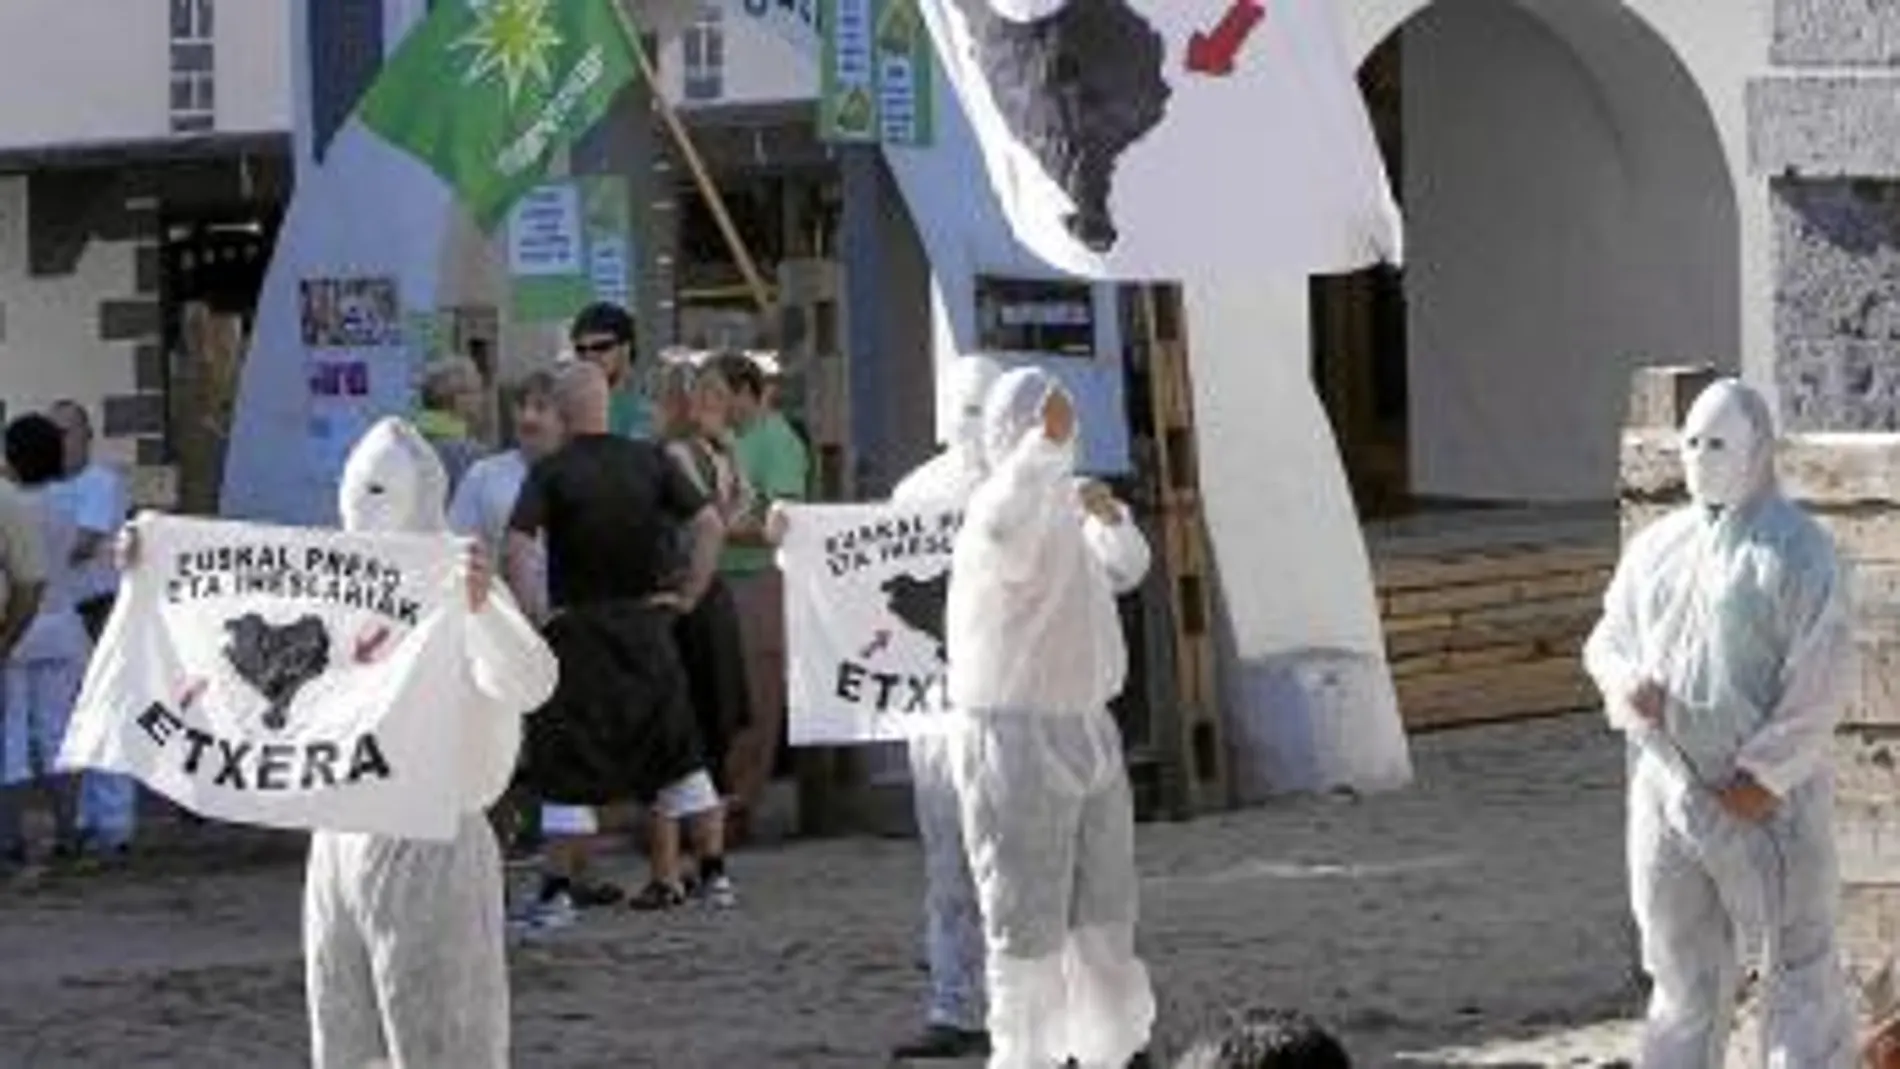 Momento en que los cinco encapuchados entran en la plaza de Leiza con pancartas y carteles a favor de los presos de la banda terrorista ETA